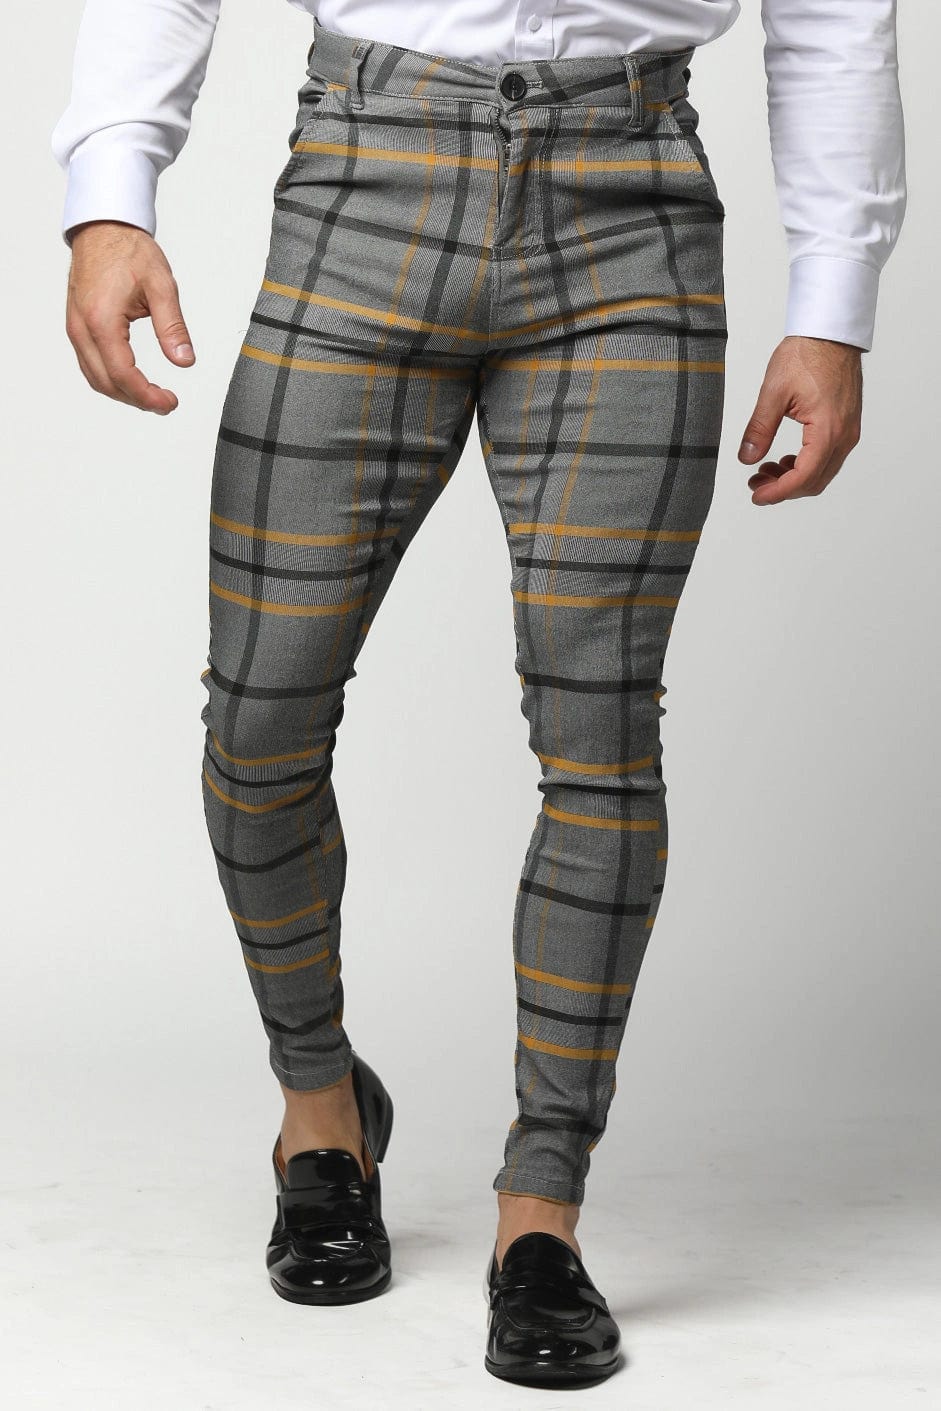 Men's Red Tartan Pants / Slim Fit Men's Pants / Men's Plaid Fabric Pants /  Retro Style Men's Pants -  Canada